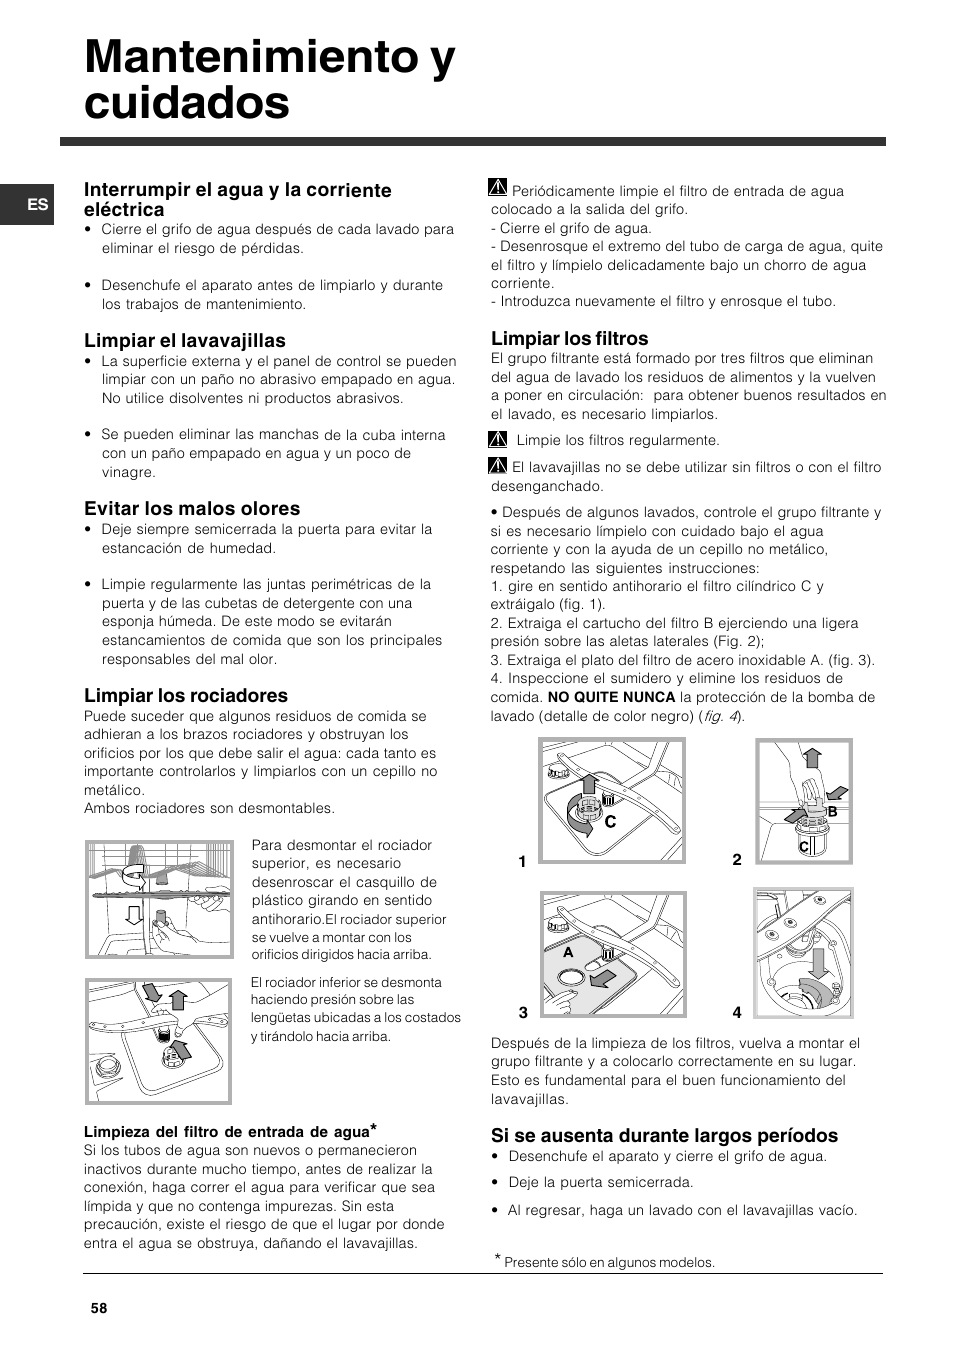 Mantenimiento y cuidados, Interrumpir el agua y la corriente eléctrica,  Limpiar el lavavajillas | Indesit DFG 262 User Manual | Page 58 / 84 |  Original mode